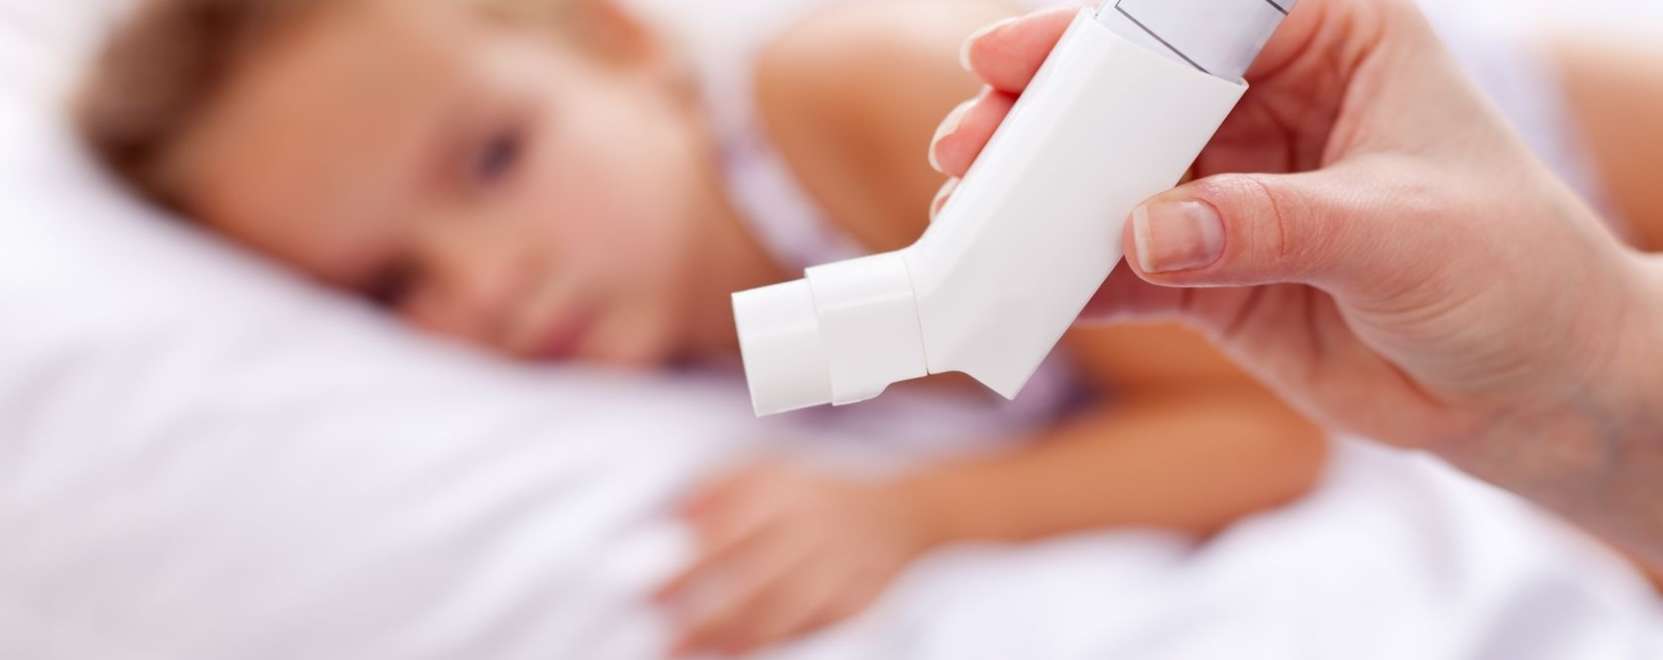 Viselhető kiegészítőkkel az asztma ellen